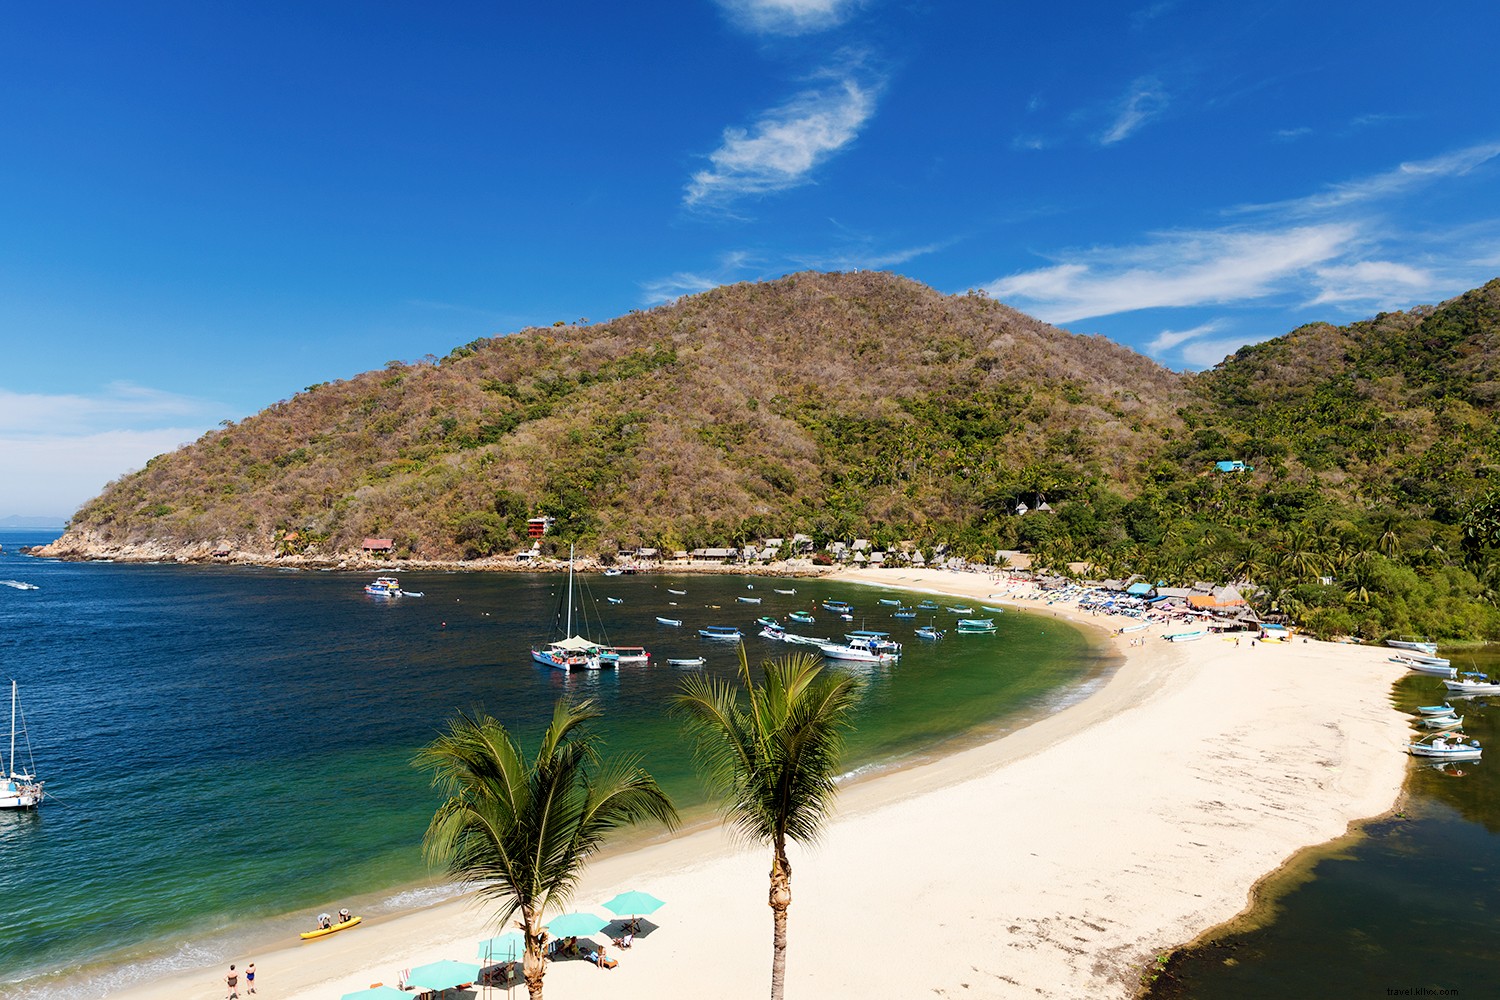 Mengenal Pantai Meksiko dengan Paling 